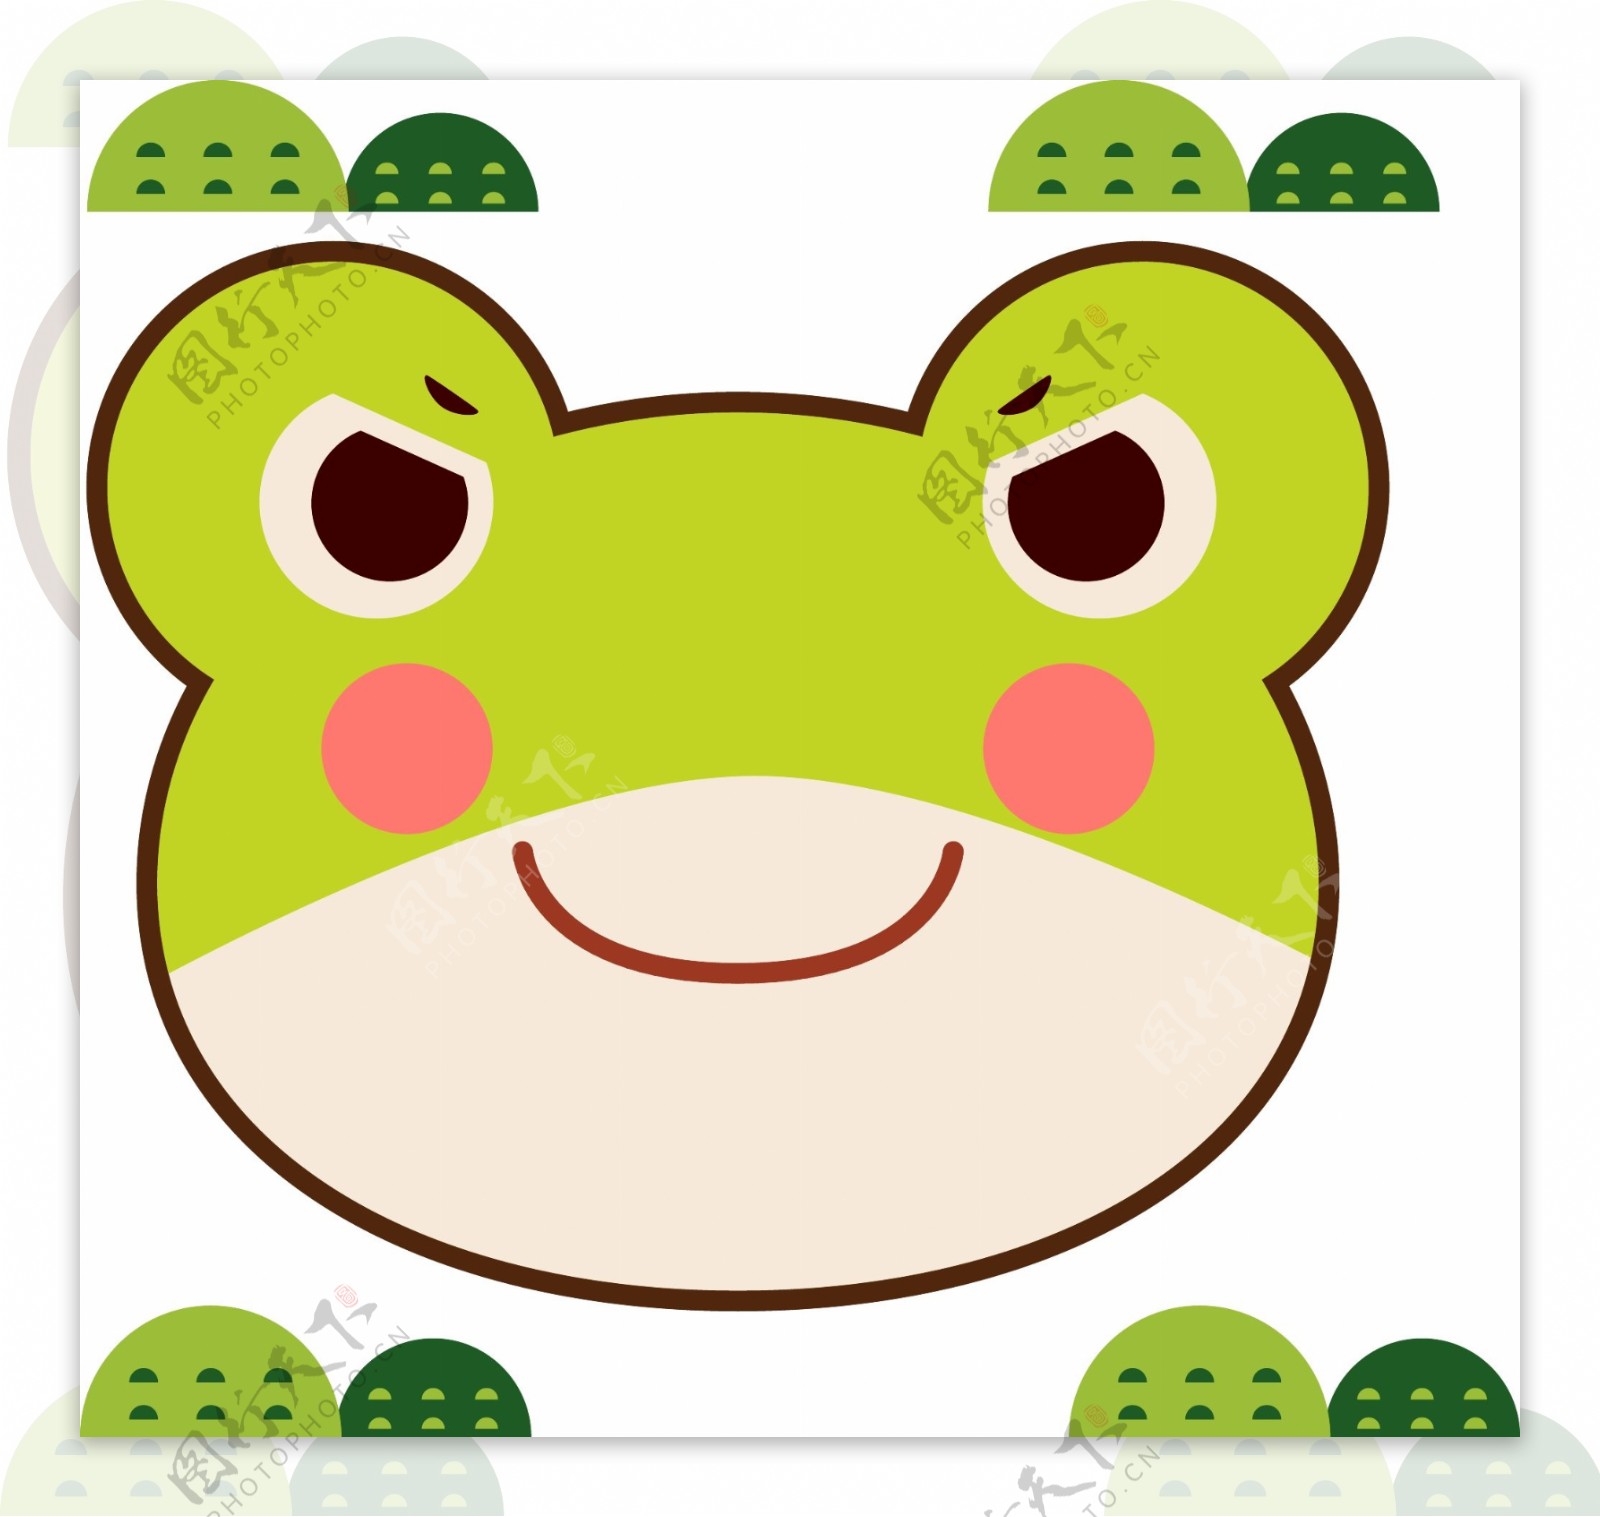 青蛙卡通头像素材